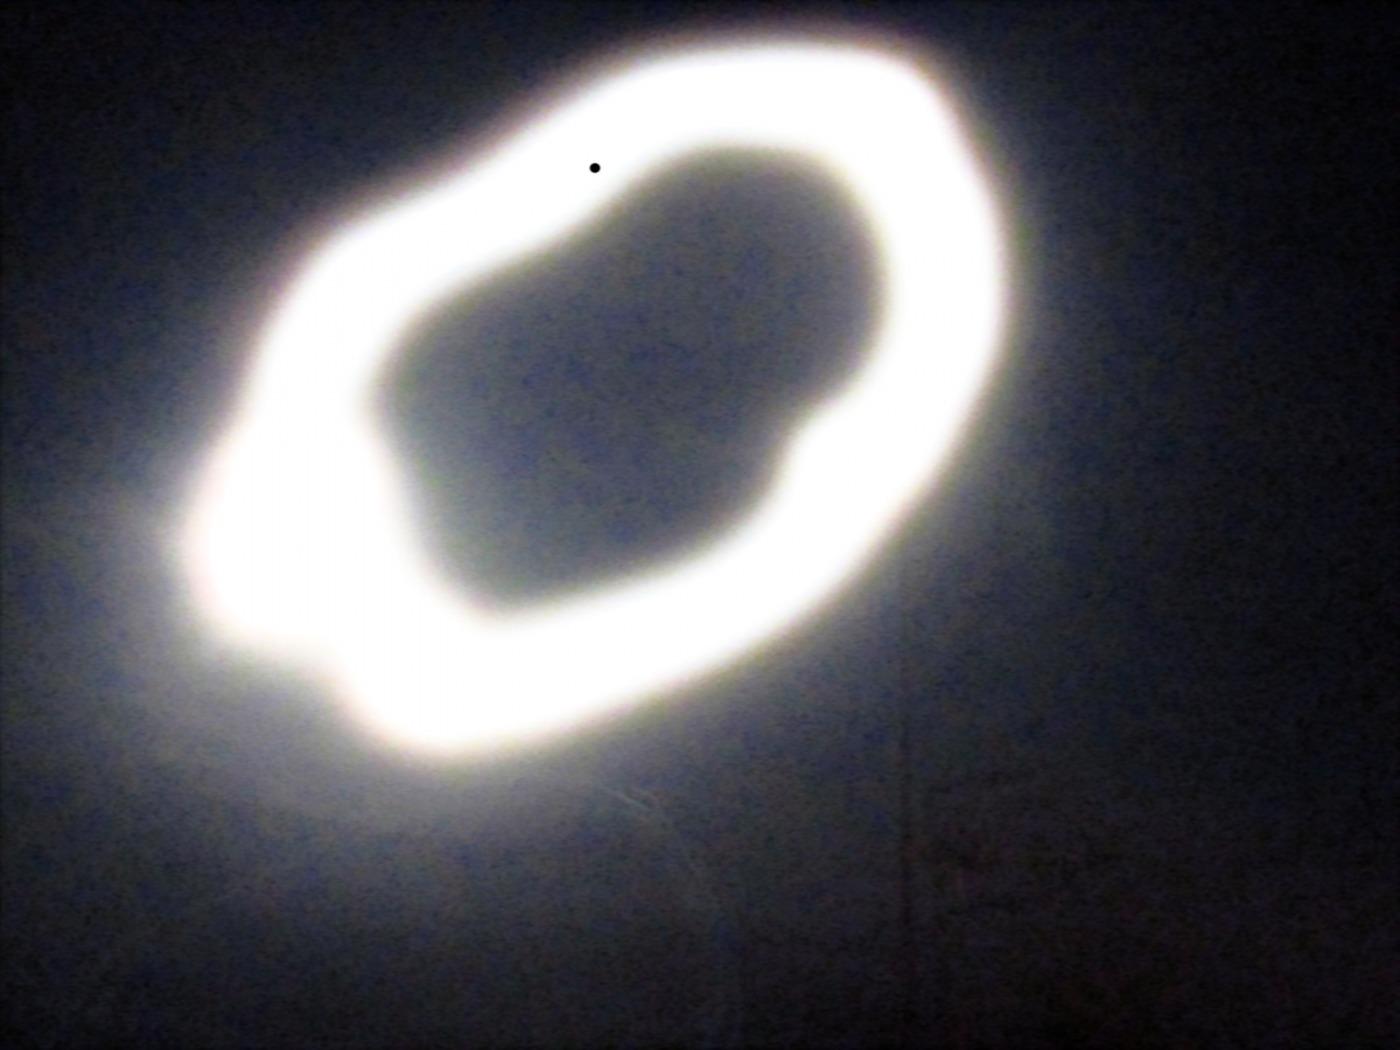 La luna llena del 31 de agosto (segunda en el mes) moviendo mi cámara durante 2 segundos hasta formar un anillo de luz - luego algunos ajustes en mi ordenador